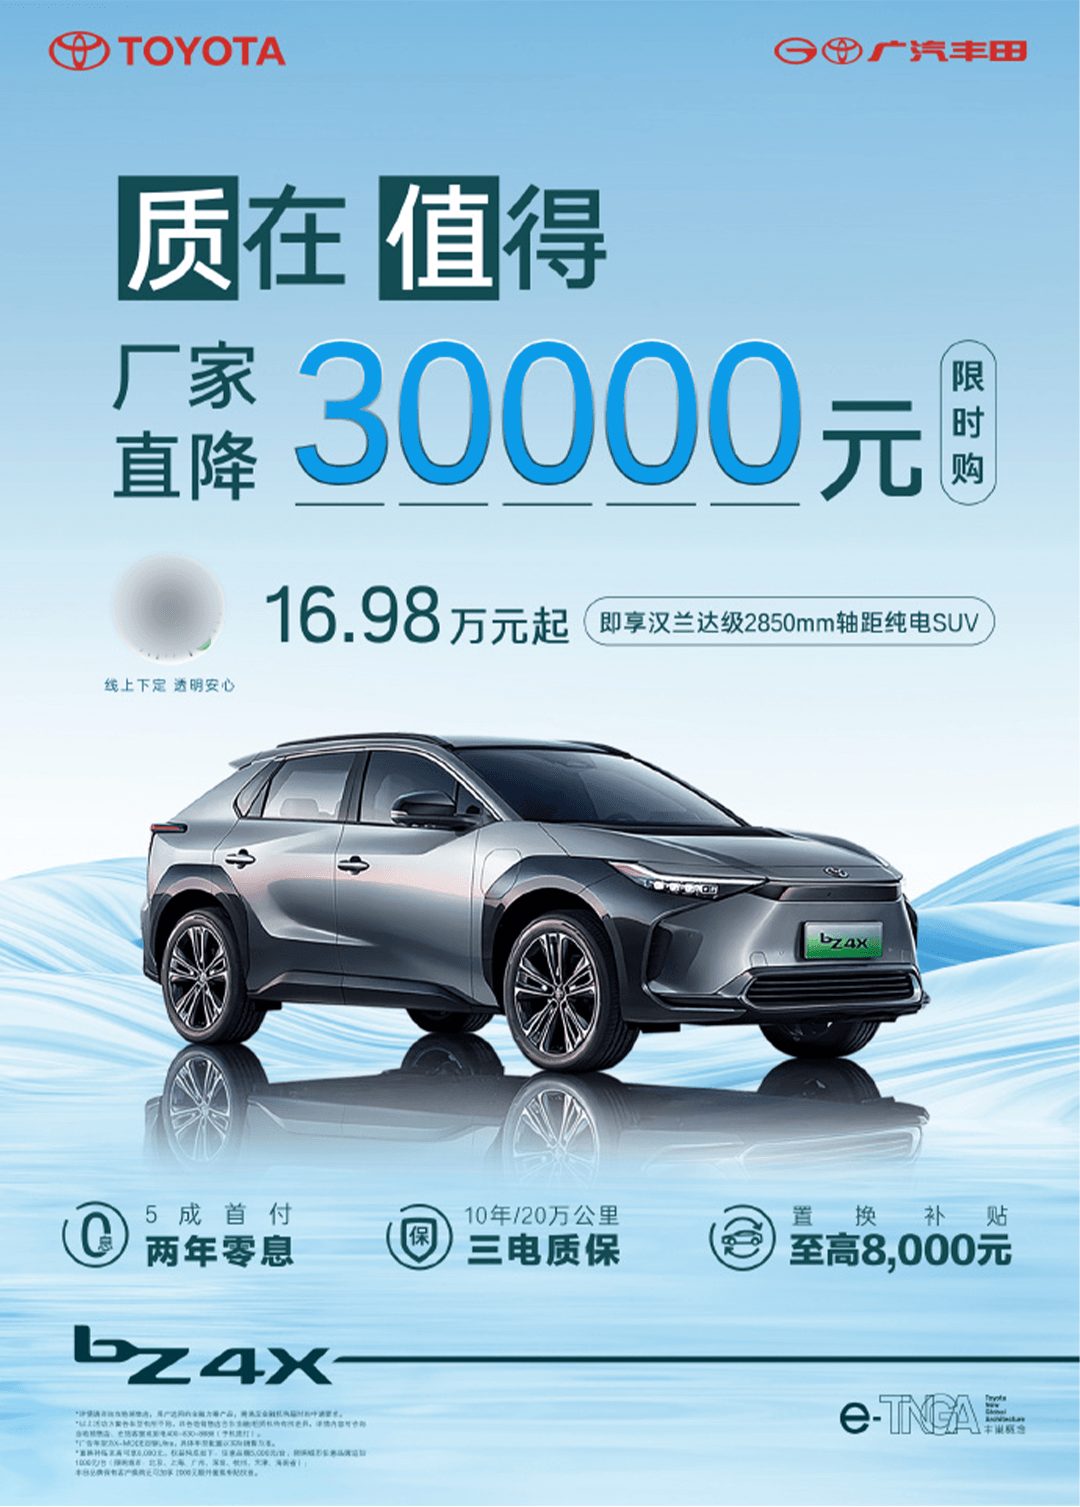 Прямая скидка 30 000 юаней!  Неужели GAC Toyota bZ4X нельзя продать?